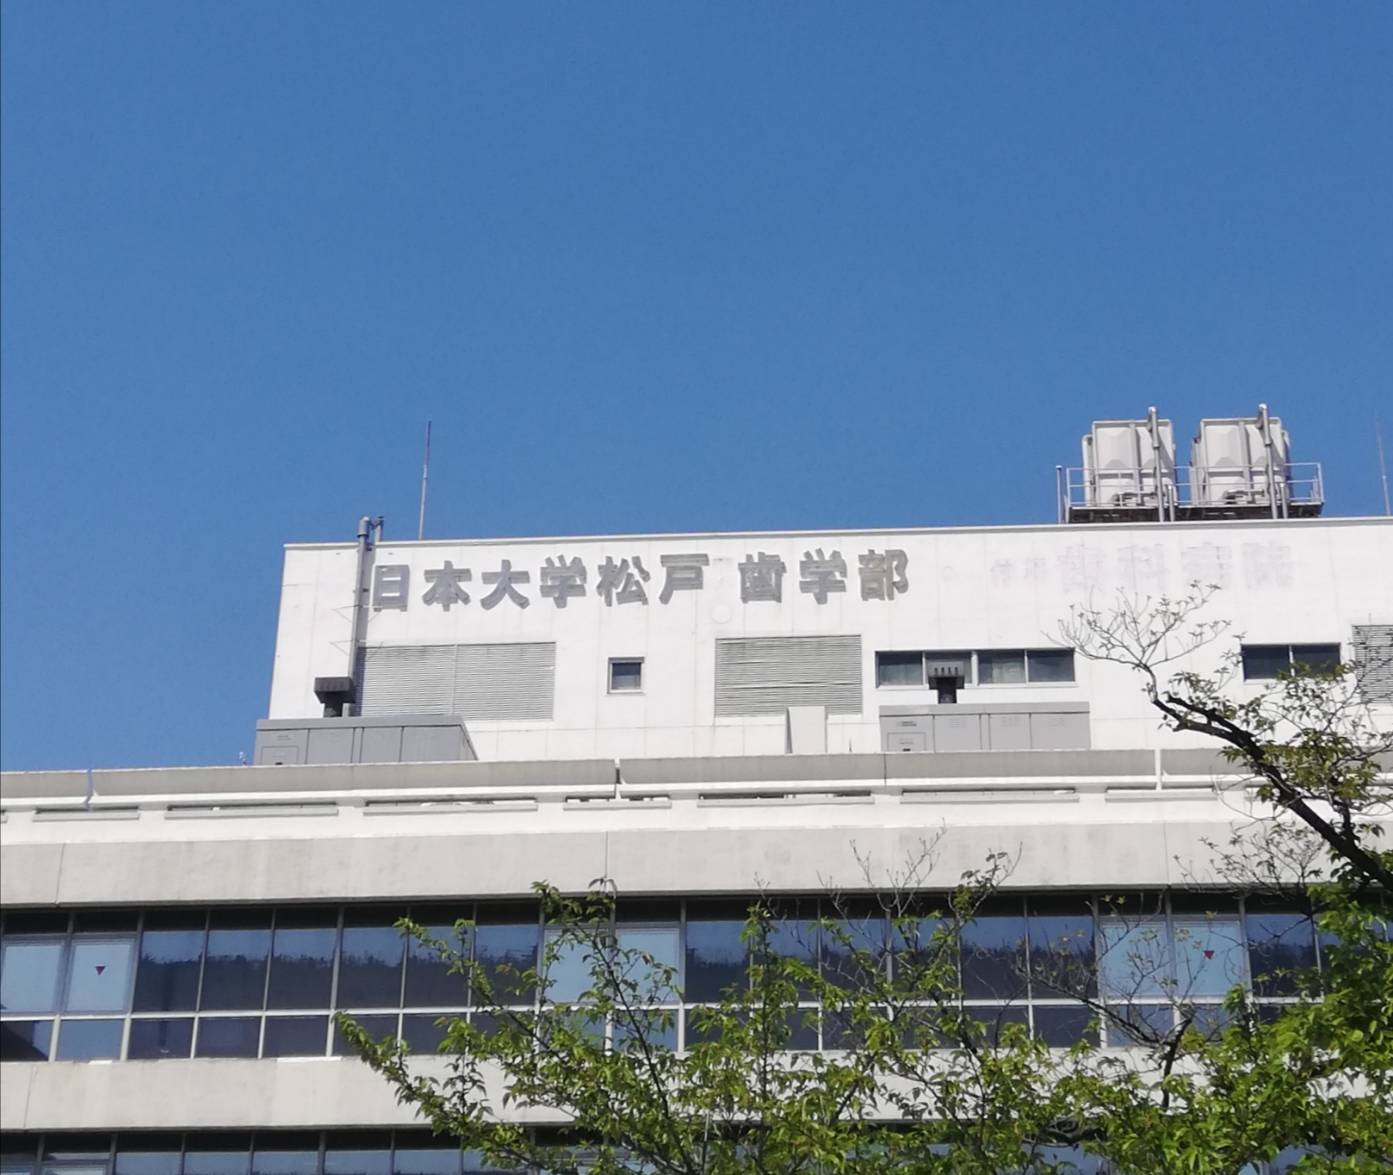 日本大学 松戸歯学部 栄町西 で新校舎の建設計画 地上4階建て22年2月より着工予定 大学構内で建替 松戸ロード 松戸の地域情報